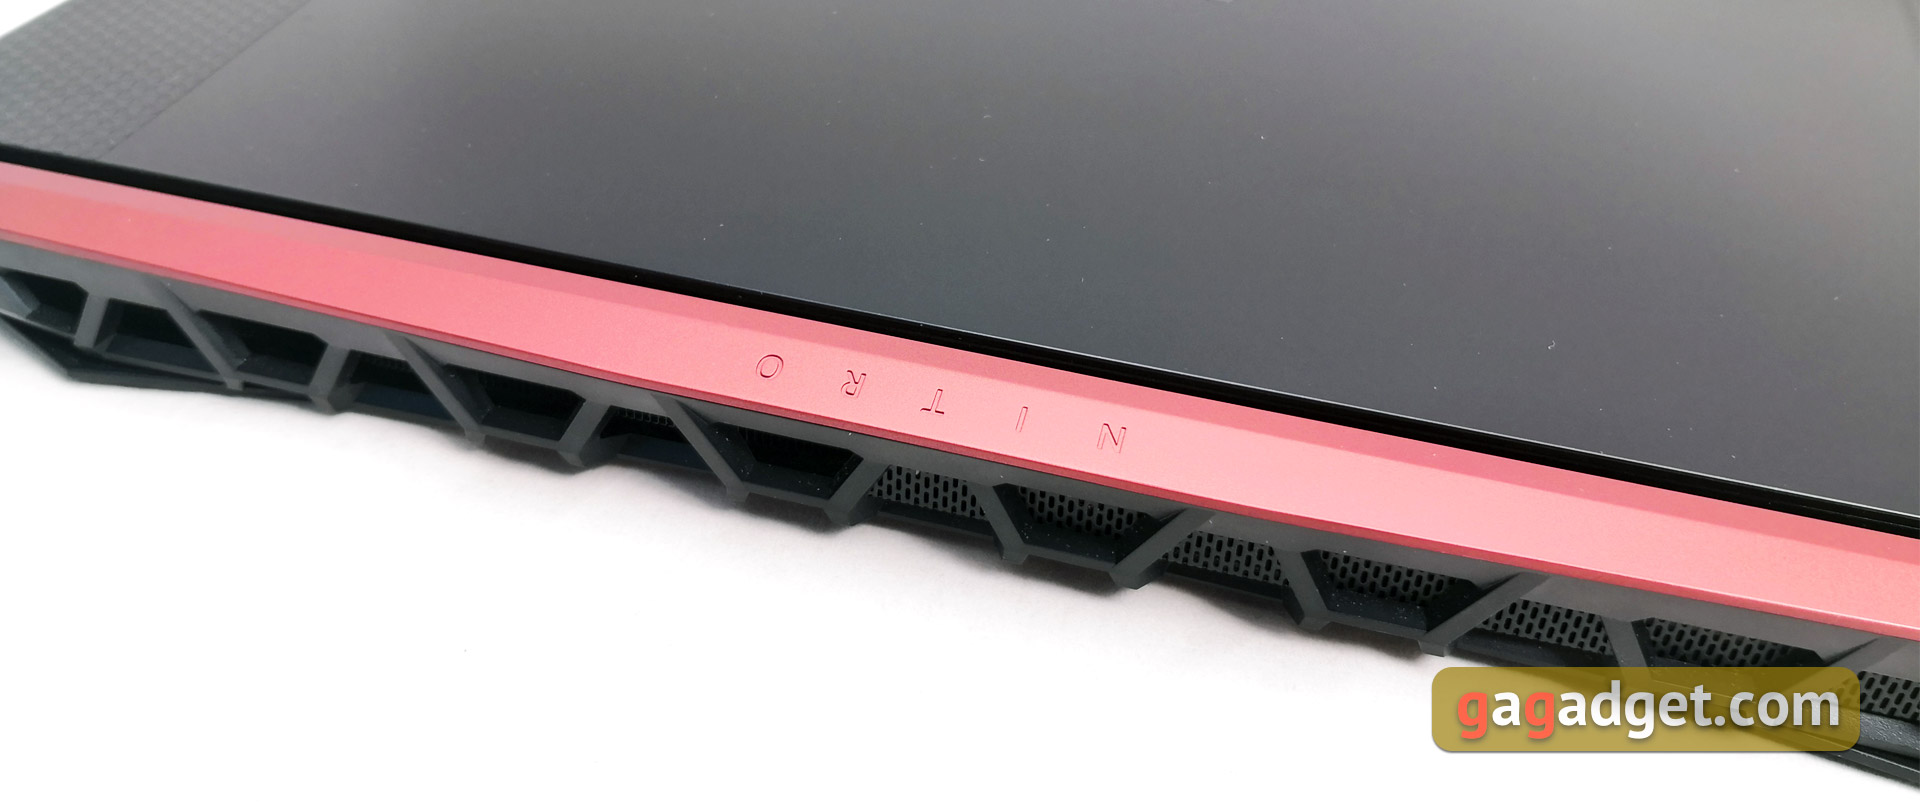 Recenzja laptopa do gier Acer Nitro 5 AN515-54: niedrogi i wydajny-10